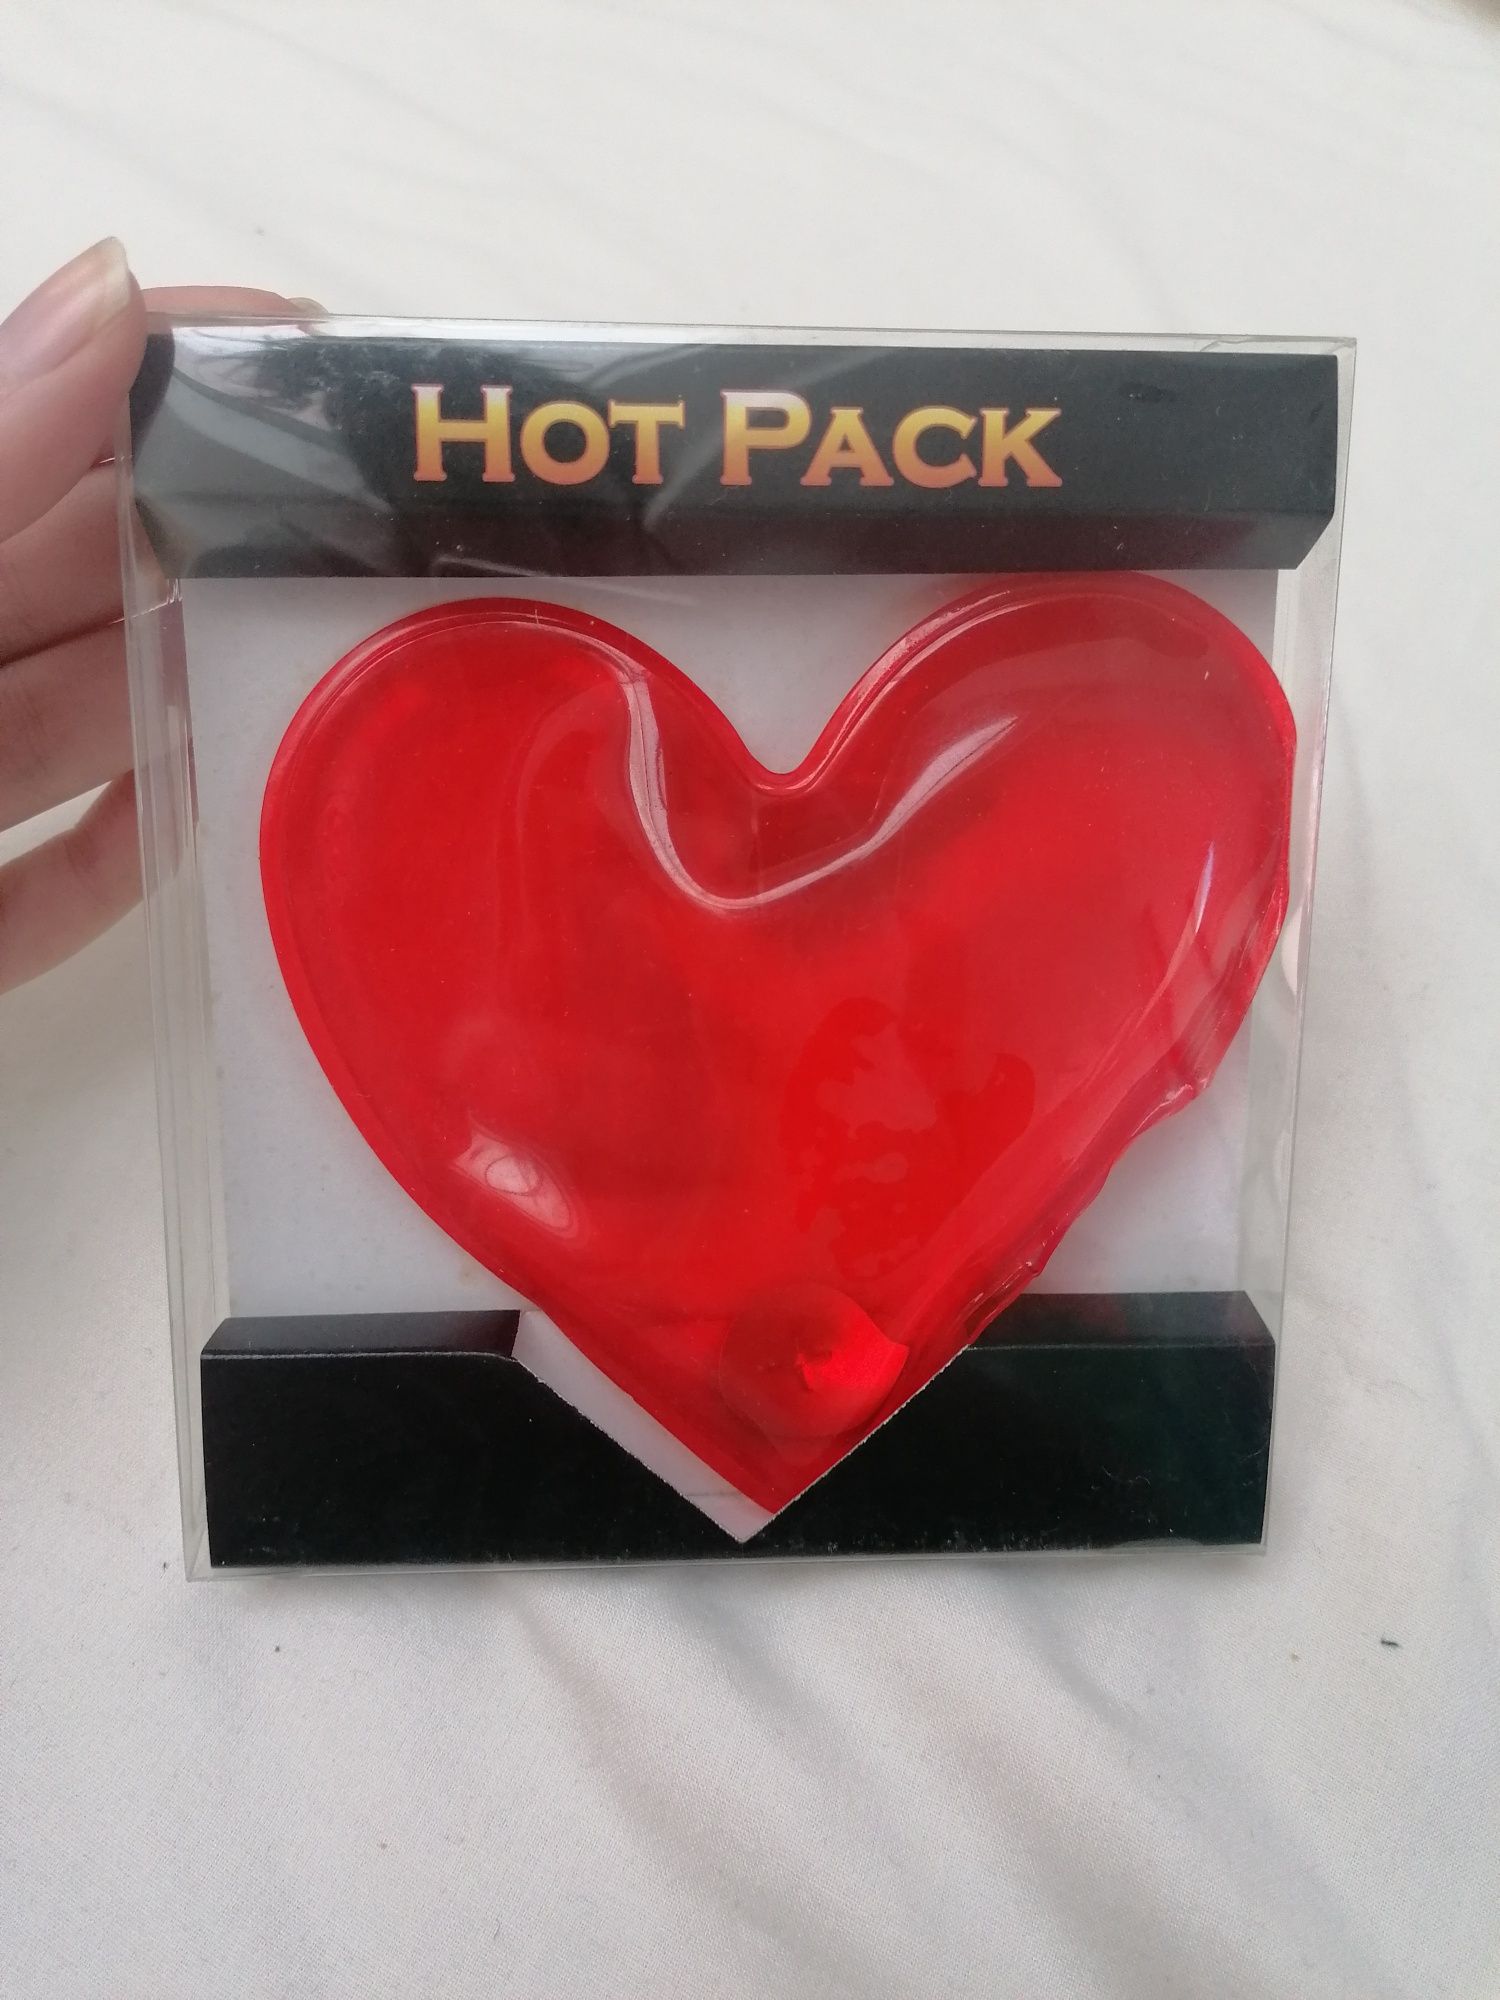 Heat Pack - Gel que aquece as mãos